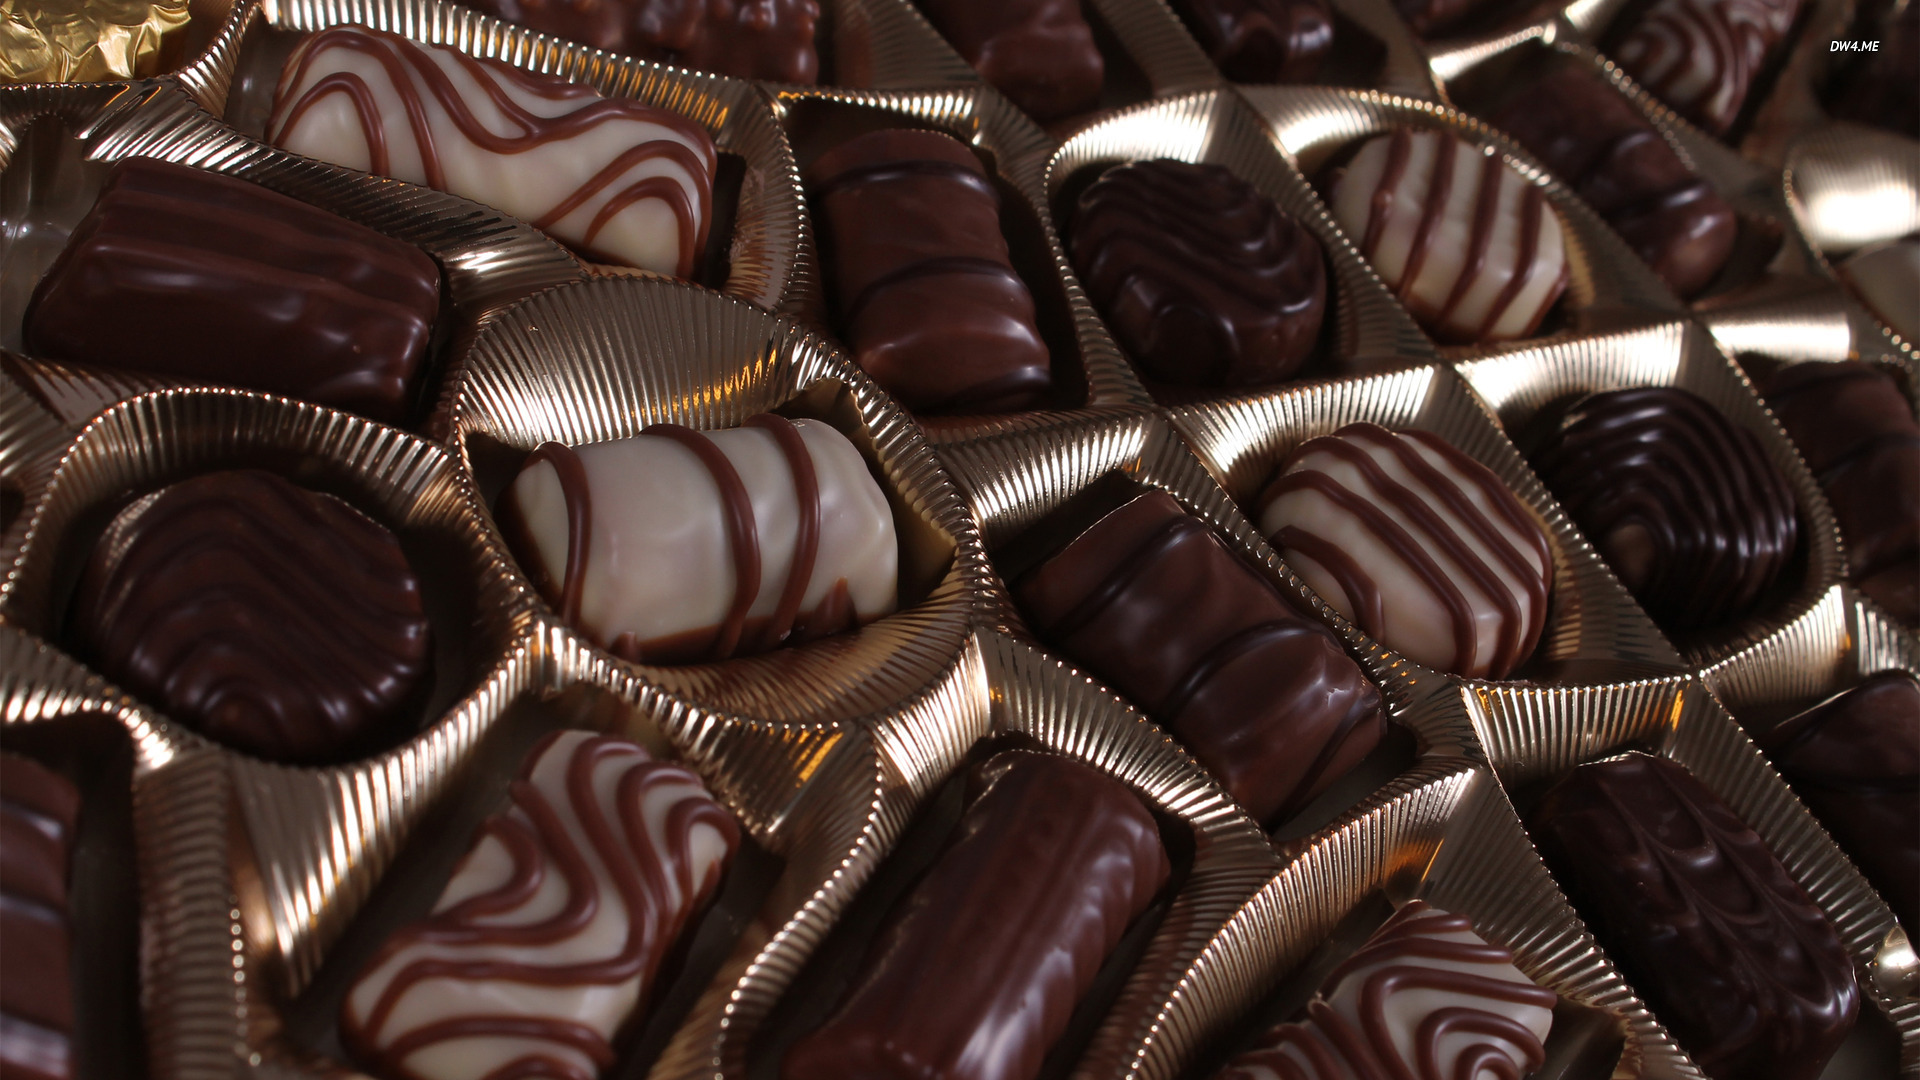 سر طريقة عمل شوكولاتة ترافل بمكونات متوفرة بداخل كل مطبخ